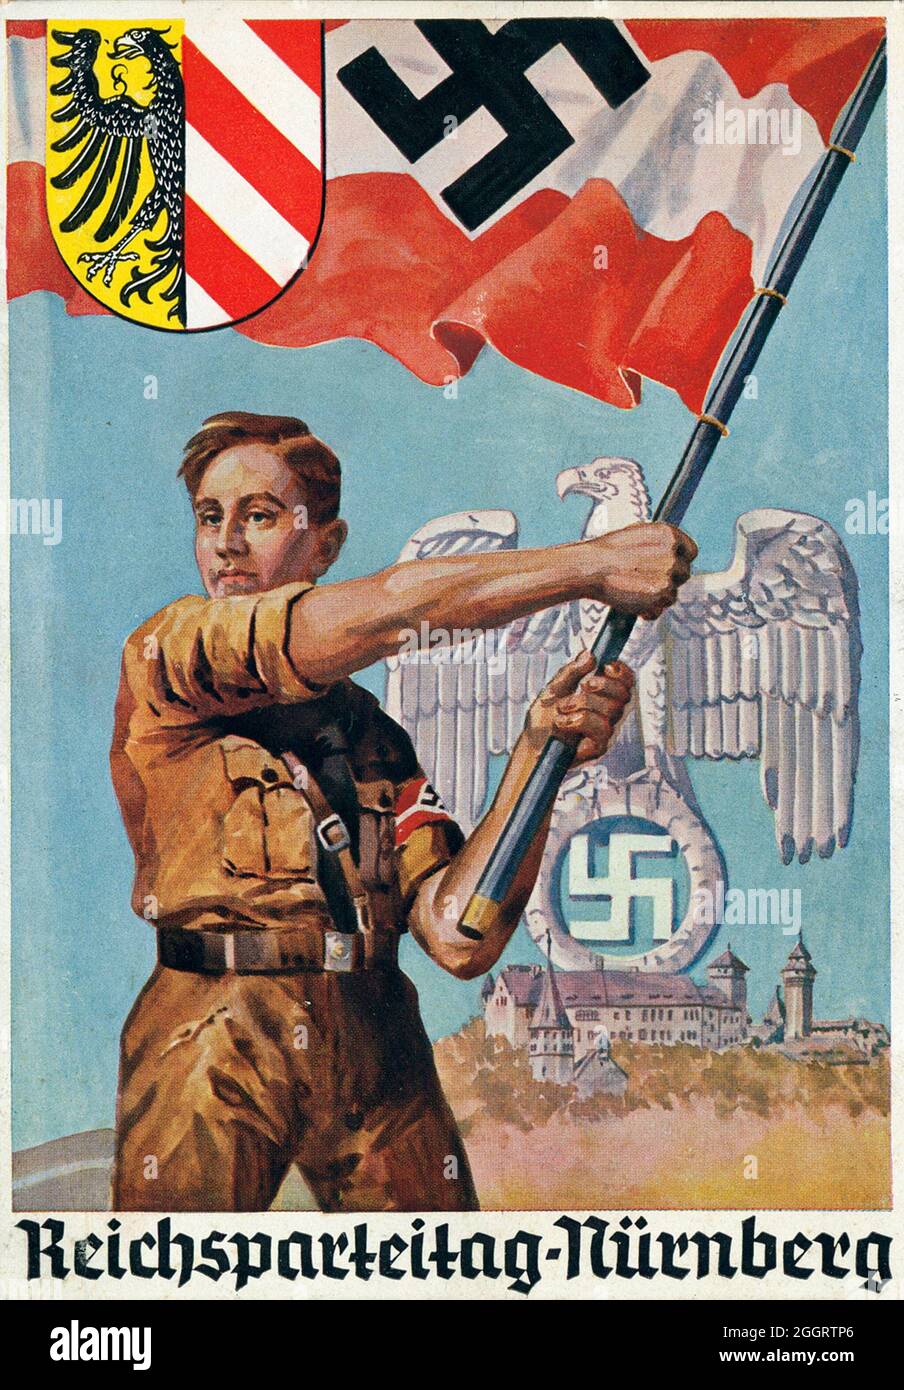 Une affiche vintage pour le rallye de Nuremberg nazi annuel montrant un membre en uniforme de la Jeunesse d'Hitler (Hitler-Jugend, HJ) Banque D'Images